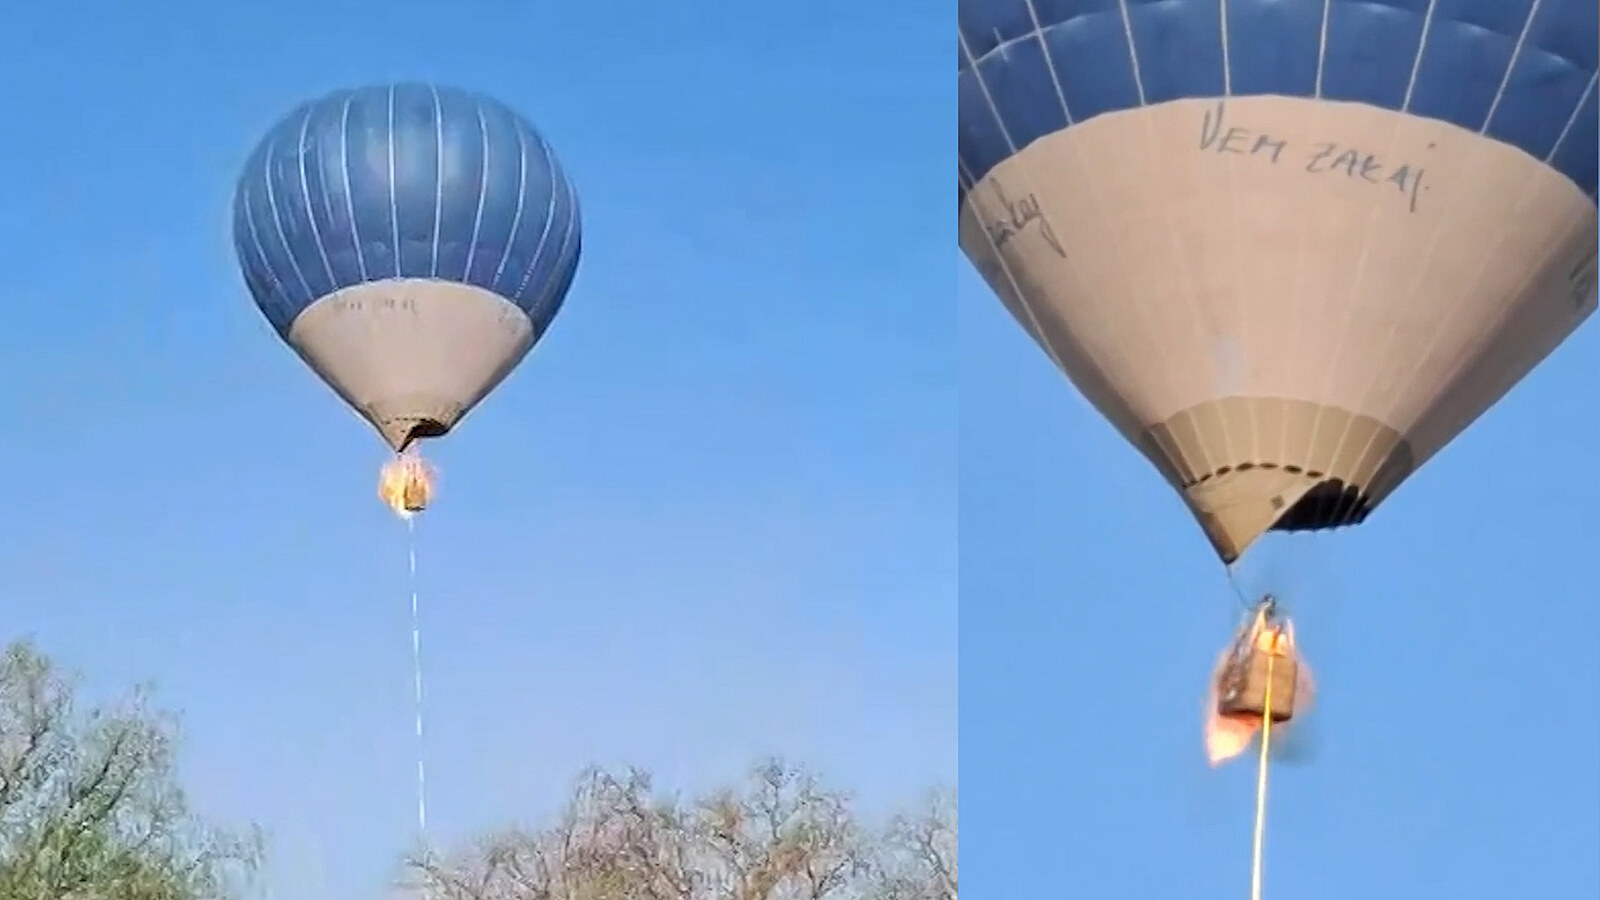 VIDEO: Horkovzdušný balon zachvátily plameny, pasažéři za letu vyskakovali  - iDNES.cz